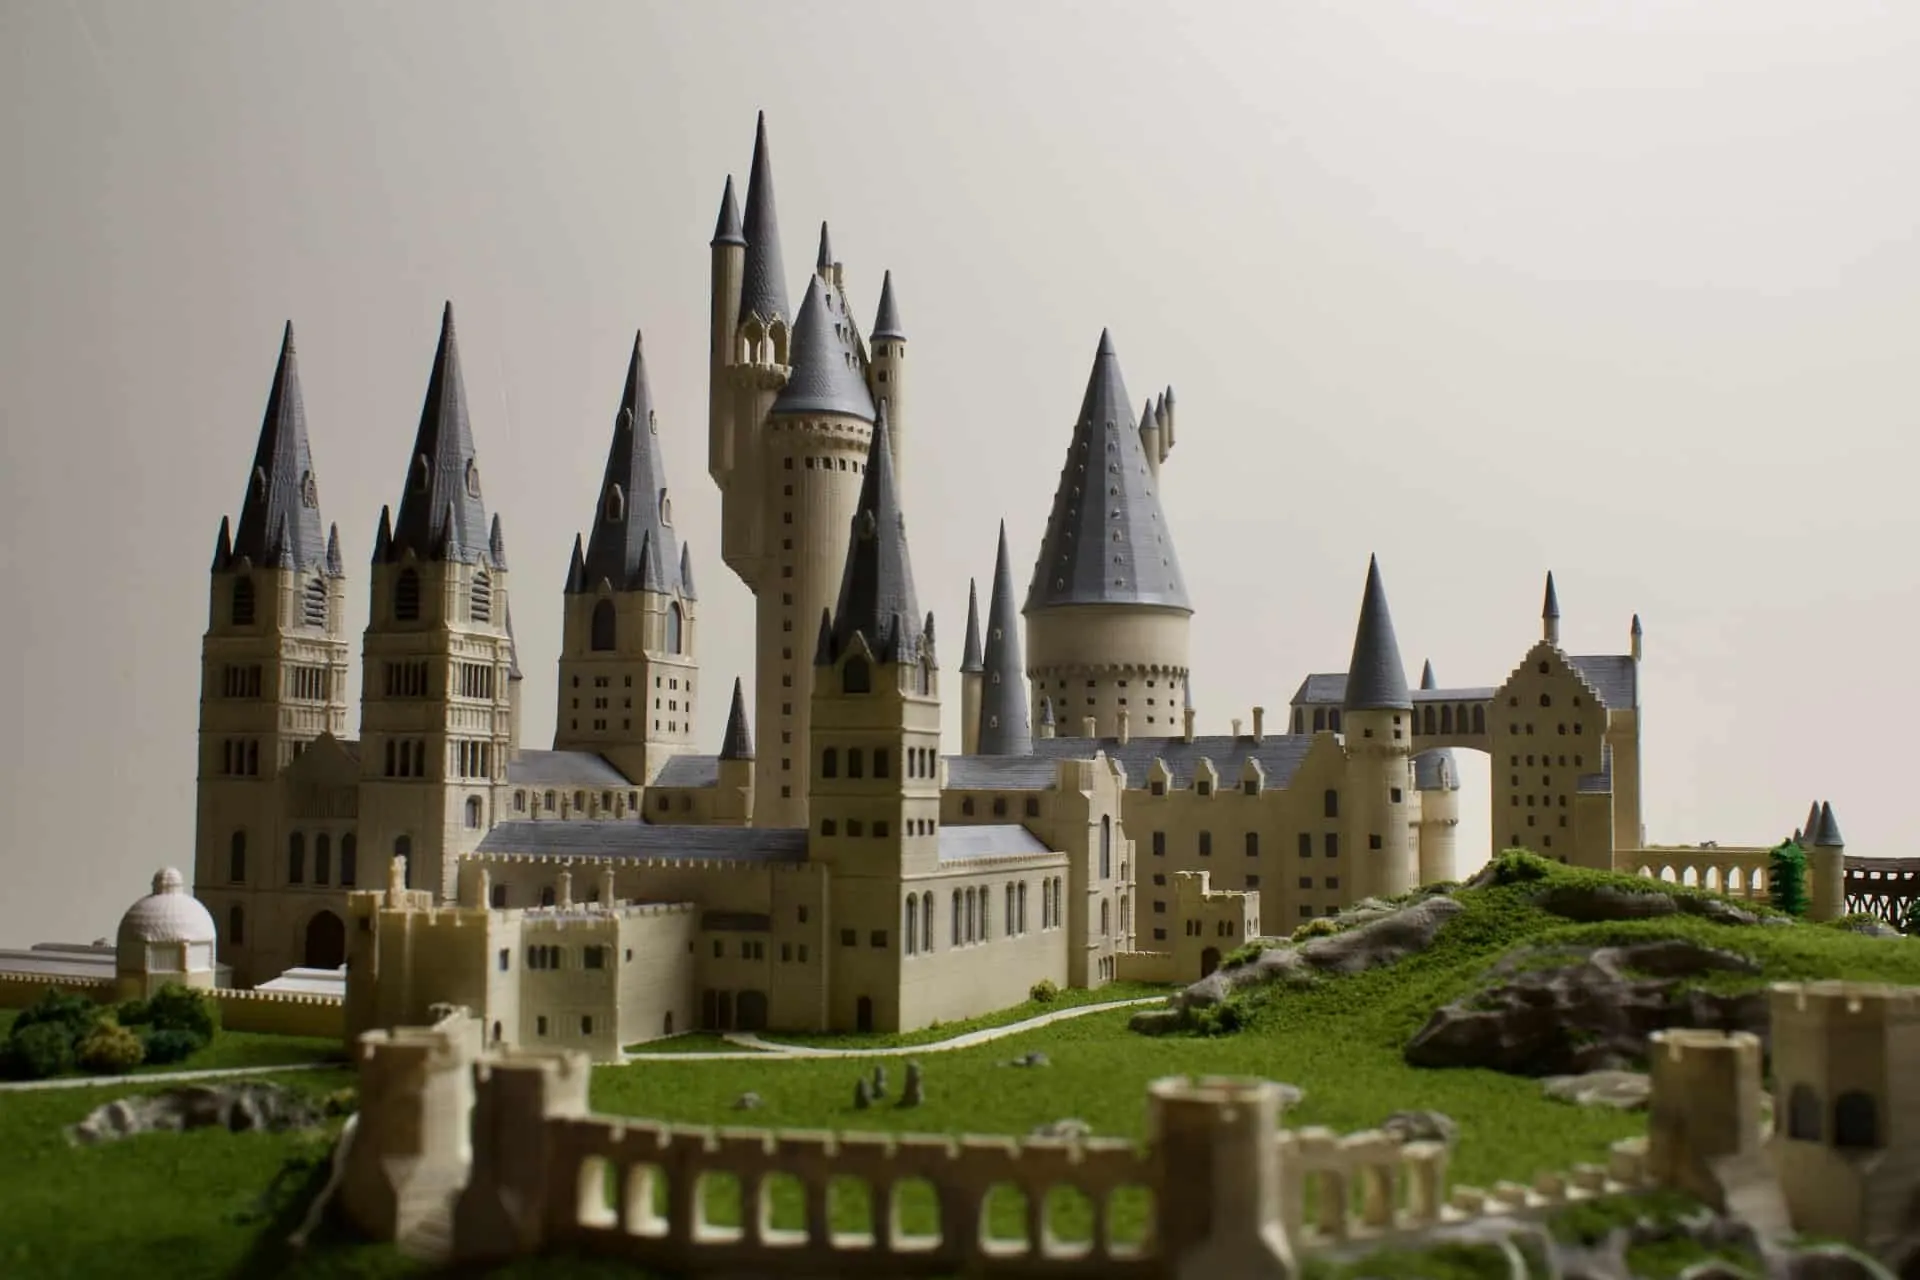 Miniatura do castelo de Hogwarts da série Harry Potter